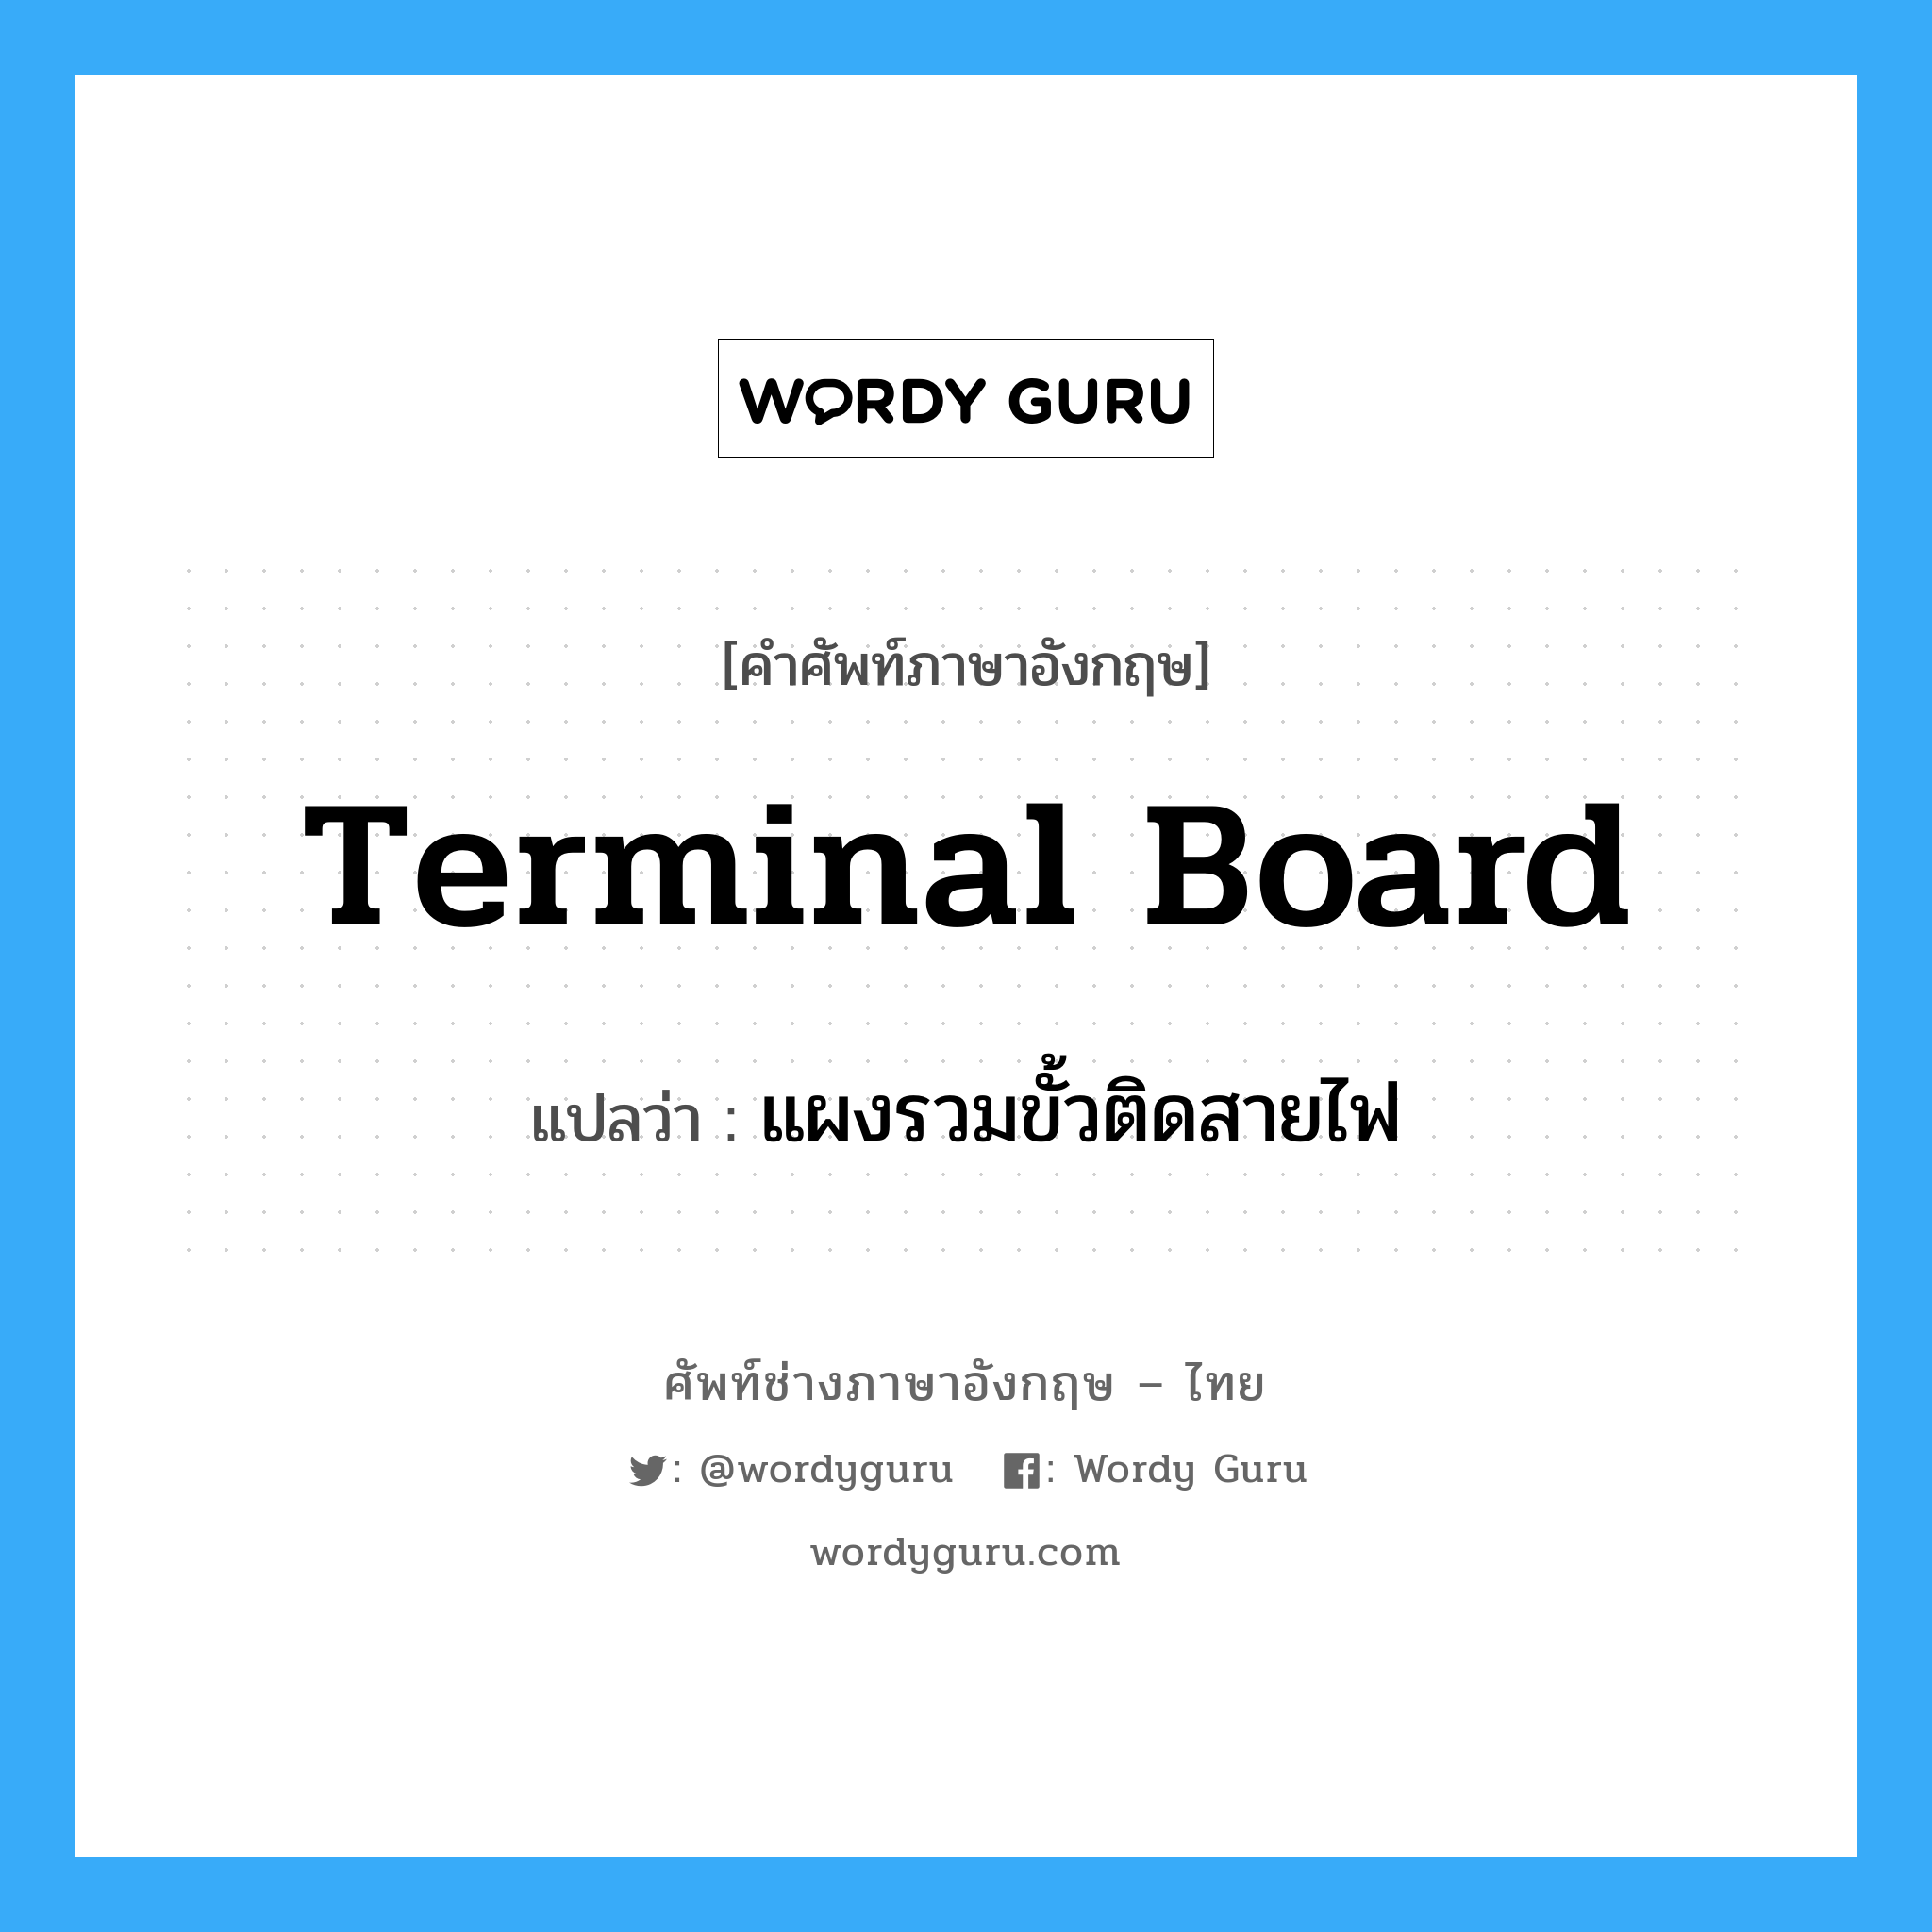 แผงรวมขั้วติดสายไฟ ภาษาอังกฤษ?, คำศัพท์ช่างภาษาอังกฤษ - ไทย แผงรวมขั้วติดสายไฟ คำศัพท์ภาษาอังกฤษ แผงรวมขั้วติดสายไฟ แปลว่า terminal board